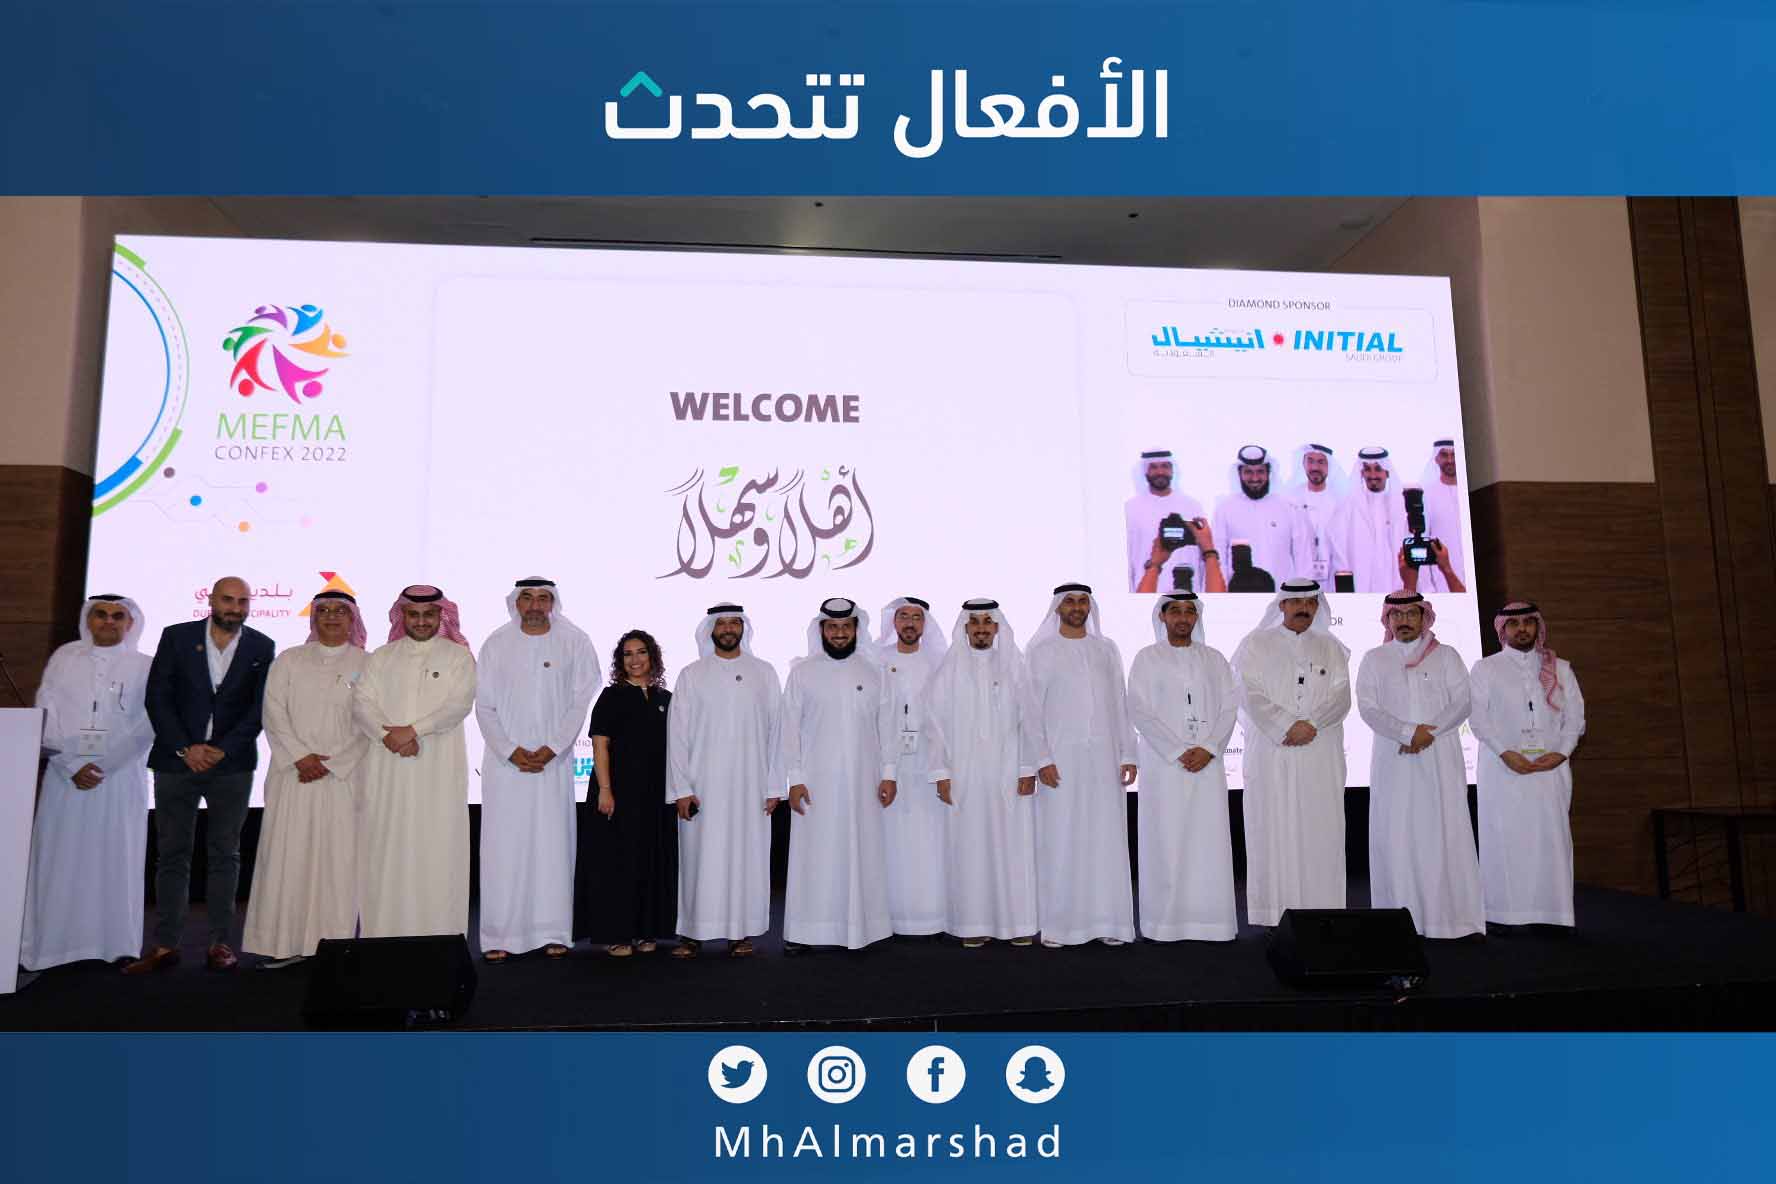 نائب رئيس مجلس الادارة رئيس اللجنة العقارية بـ #غرفة_الرياض خلال مؤتمر (ميفما كونفكس 2022) في مدينة دبي